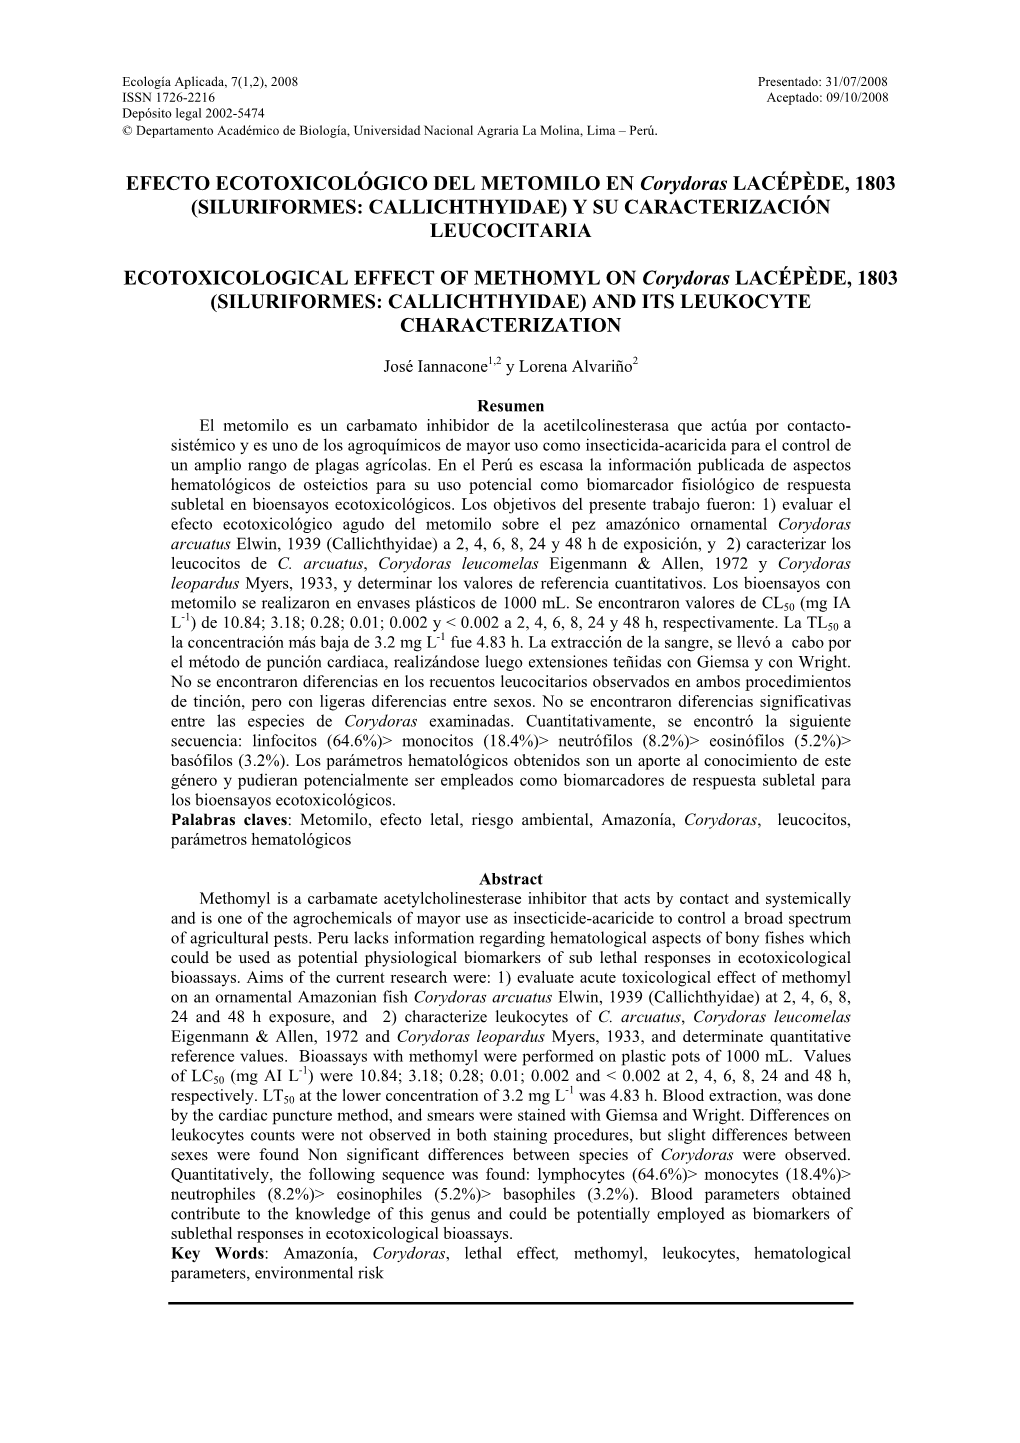 EFECTO ECOTOXICOLÓGICO DEL METOMILO EN Corydoras LACÉPÈDE, 1803 (SILURIFORMES: CALLICHTHYIDAE) Y SU CARACTERIZACIÓN LEUCOCITARIA